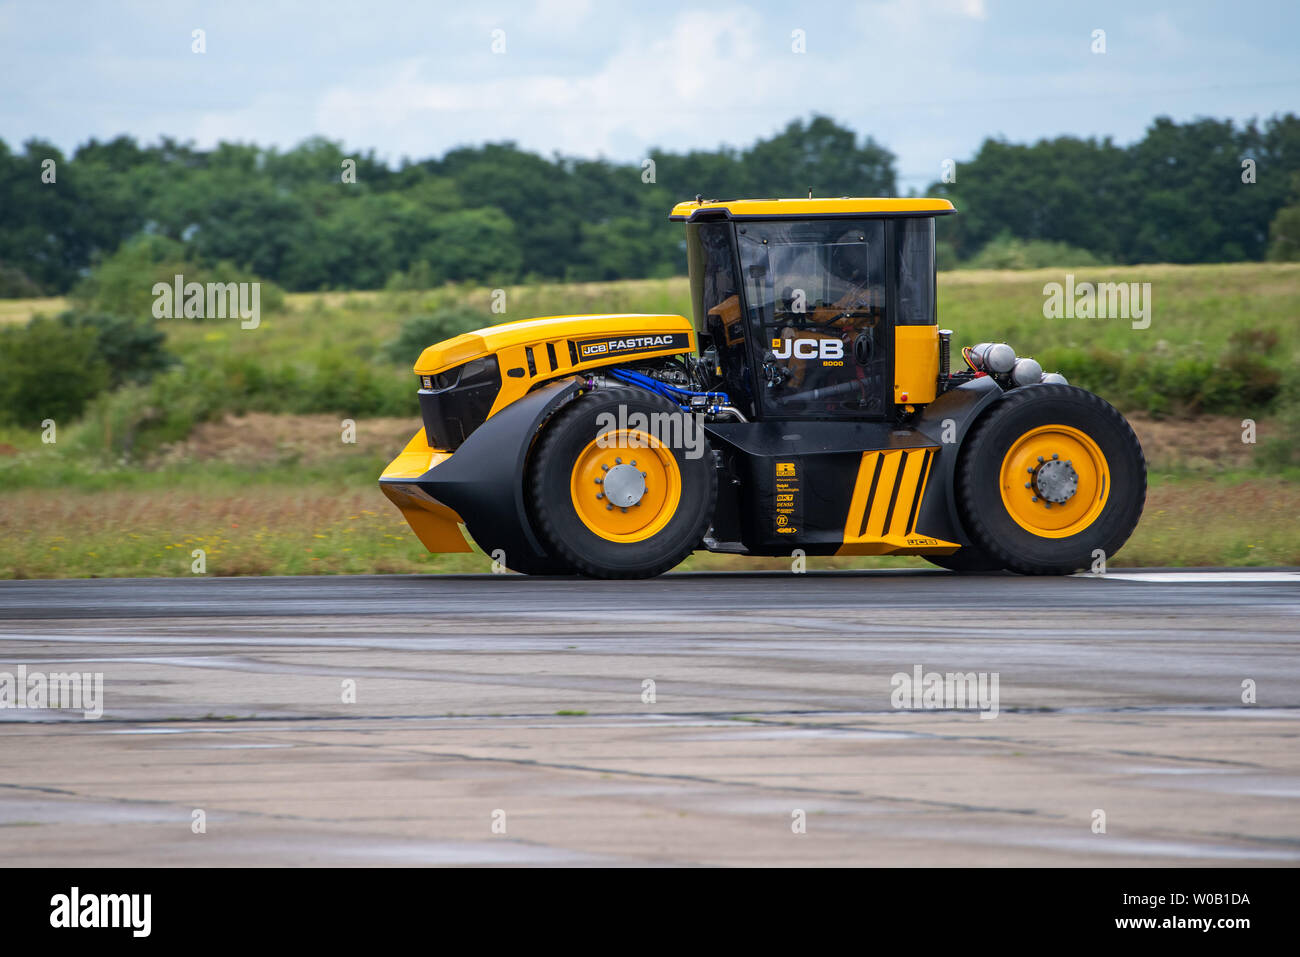 JCB Agri-machinery fabrique faire un nouveau record de vitesse pour un tracteur de 103.6 mph, battant le précédent record établi à 87,27 mph Mars 2018 Banque D'Images